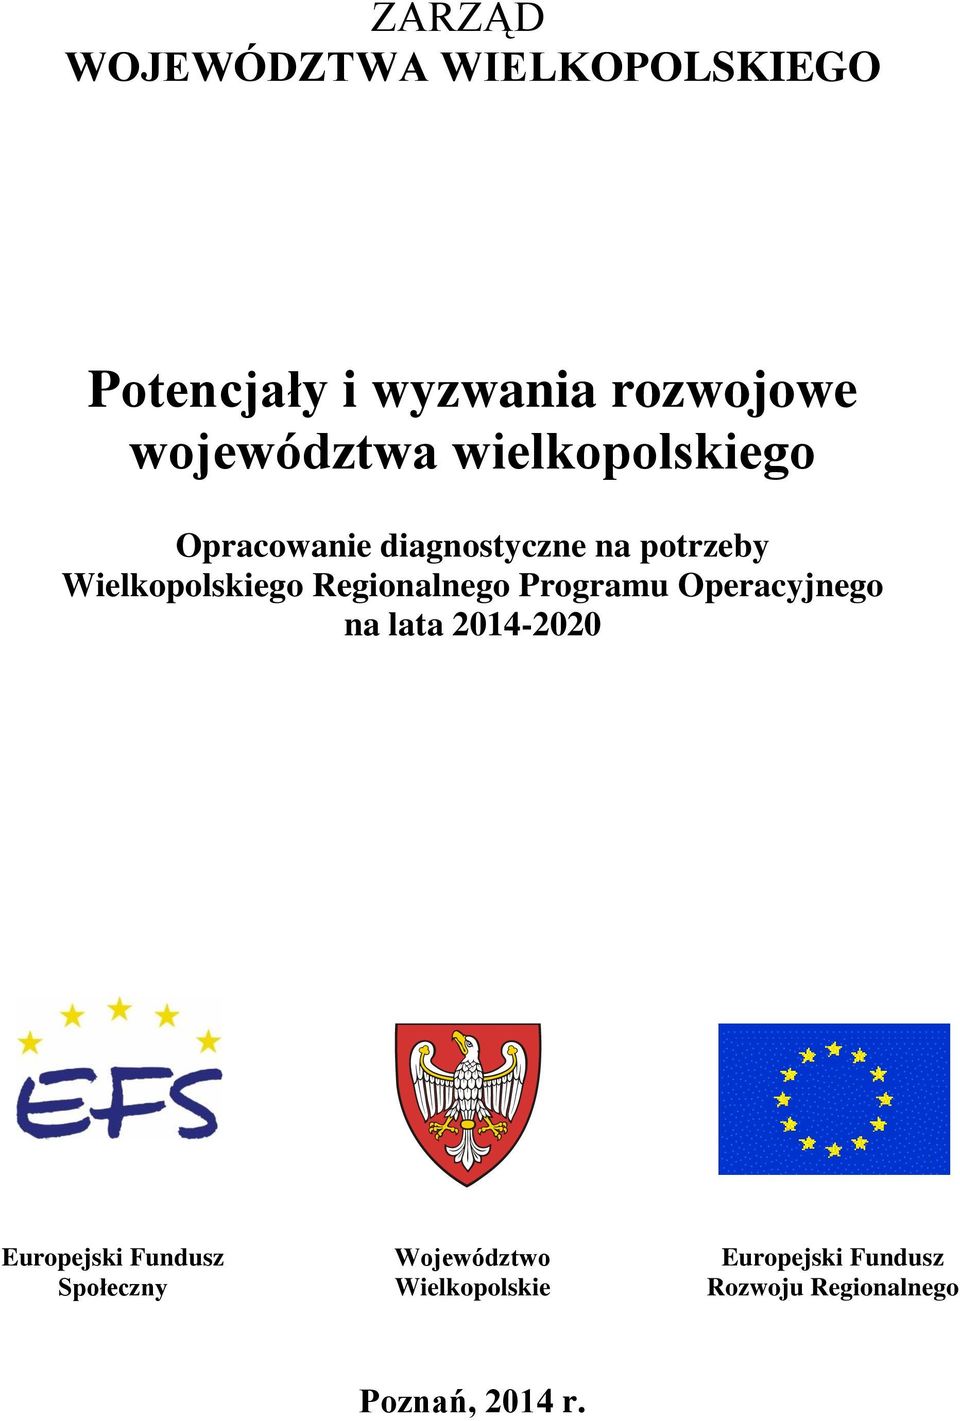 Wielkopolskiego Regionalnego Programu Operacyjnego na lata 2014-2020